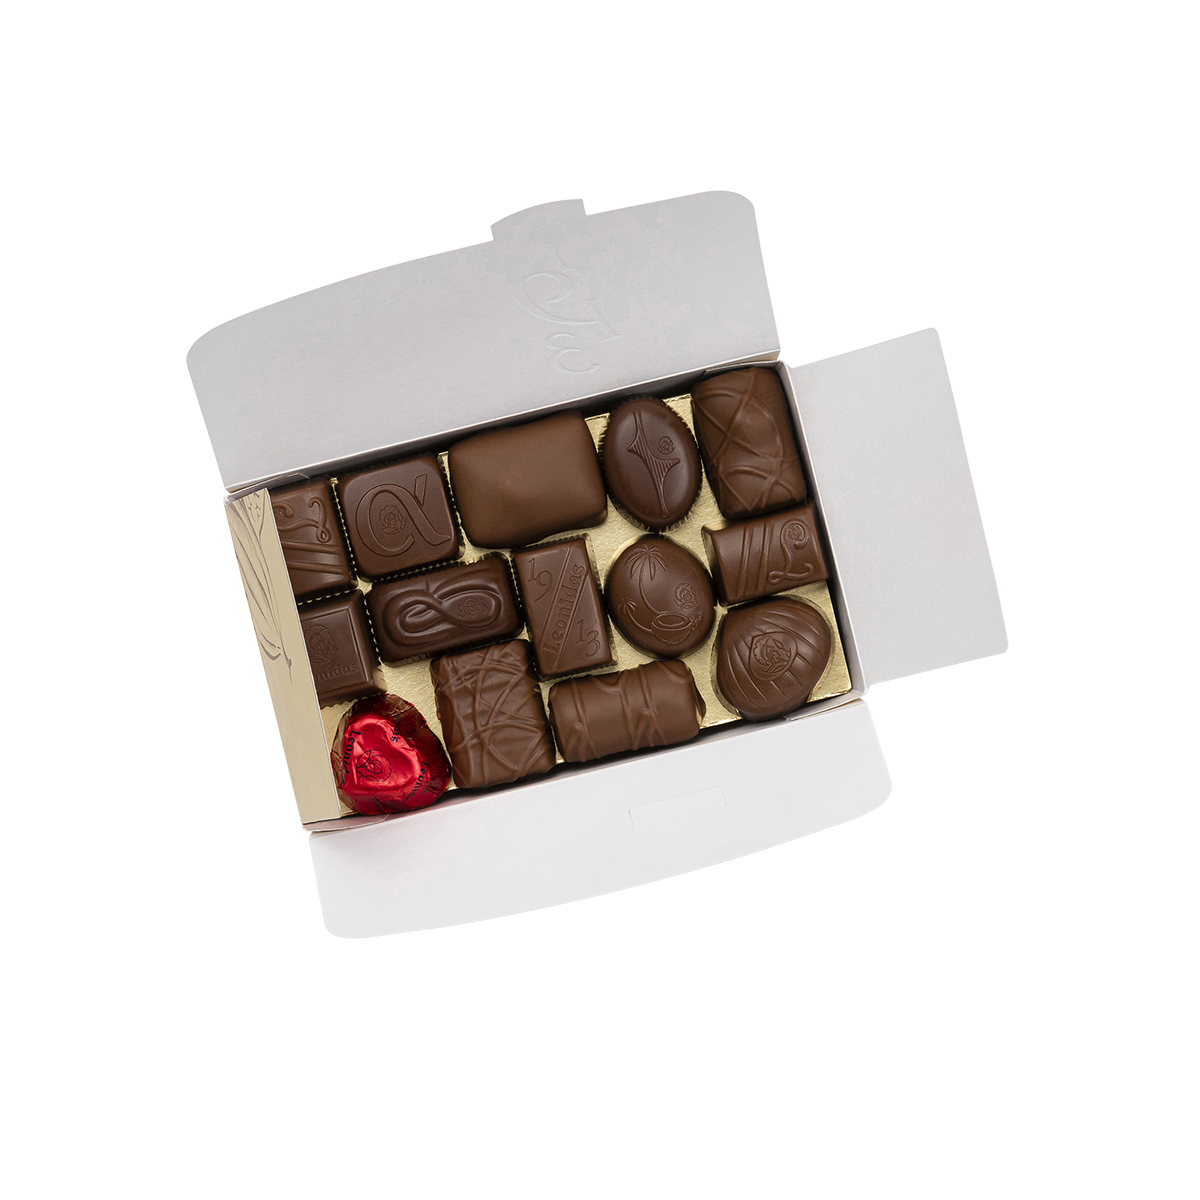 30 Chocolates Ballotin Box - leonidasbrighton.co.uk - BYOB